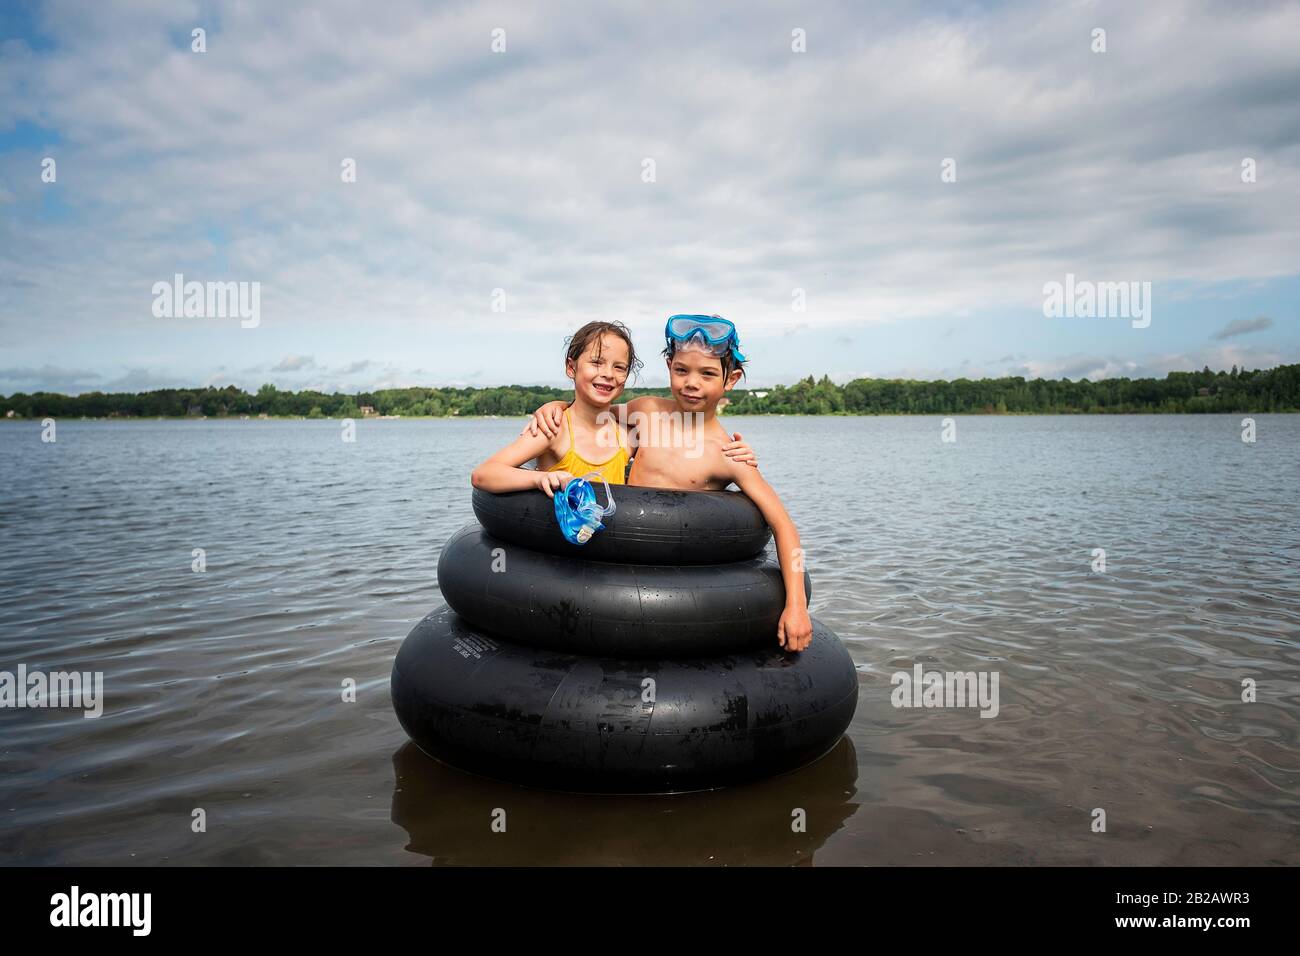 Fille et garçon debout à l'intérieur des anneaux gonflables en caoutchouc dans un lac, États-Unis Banque D'Images